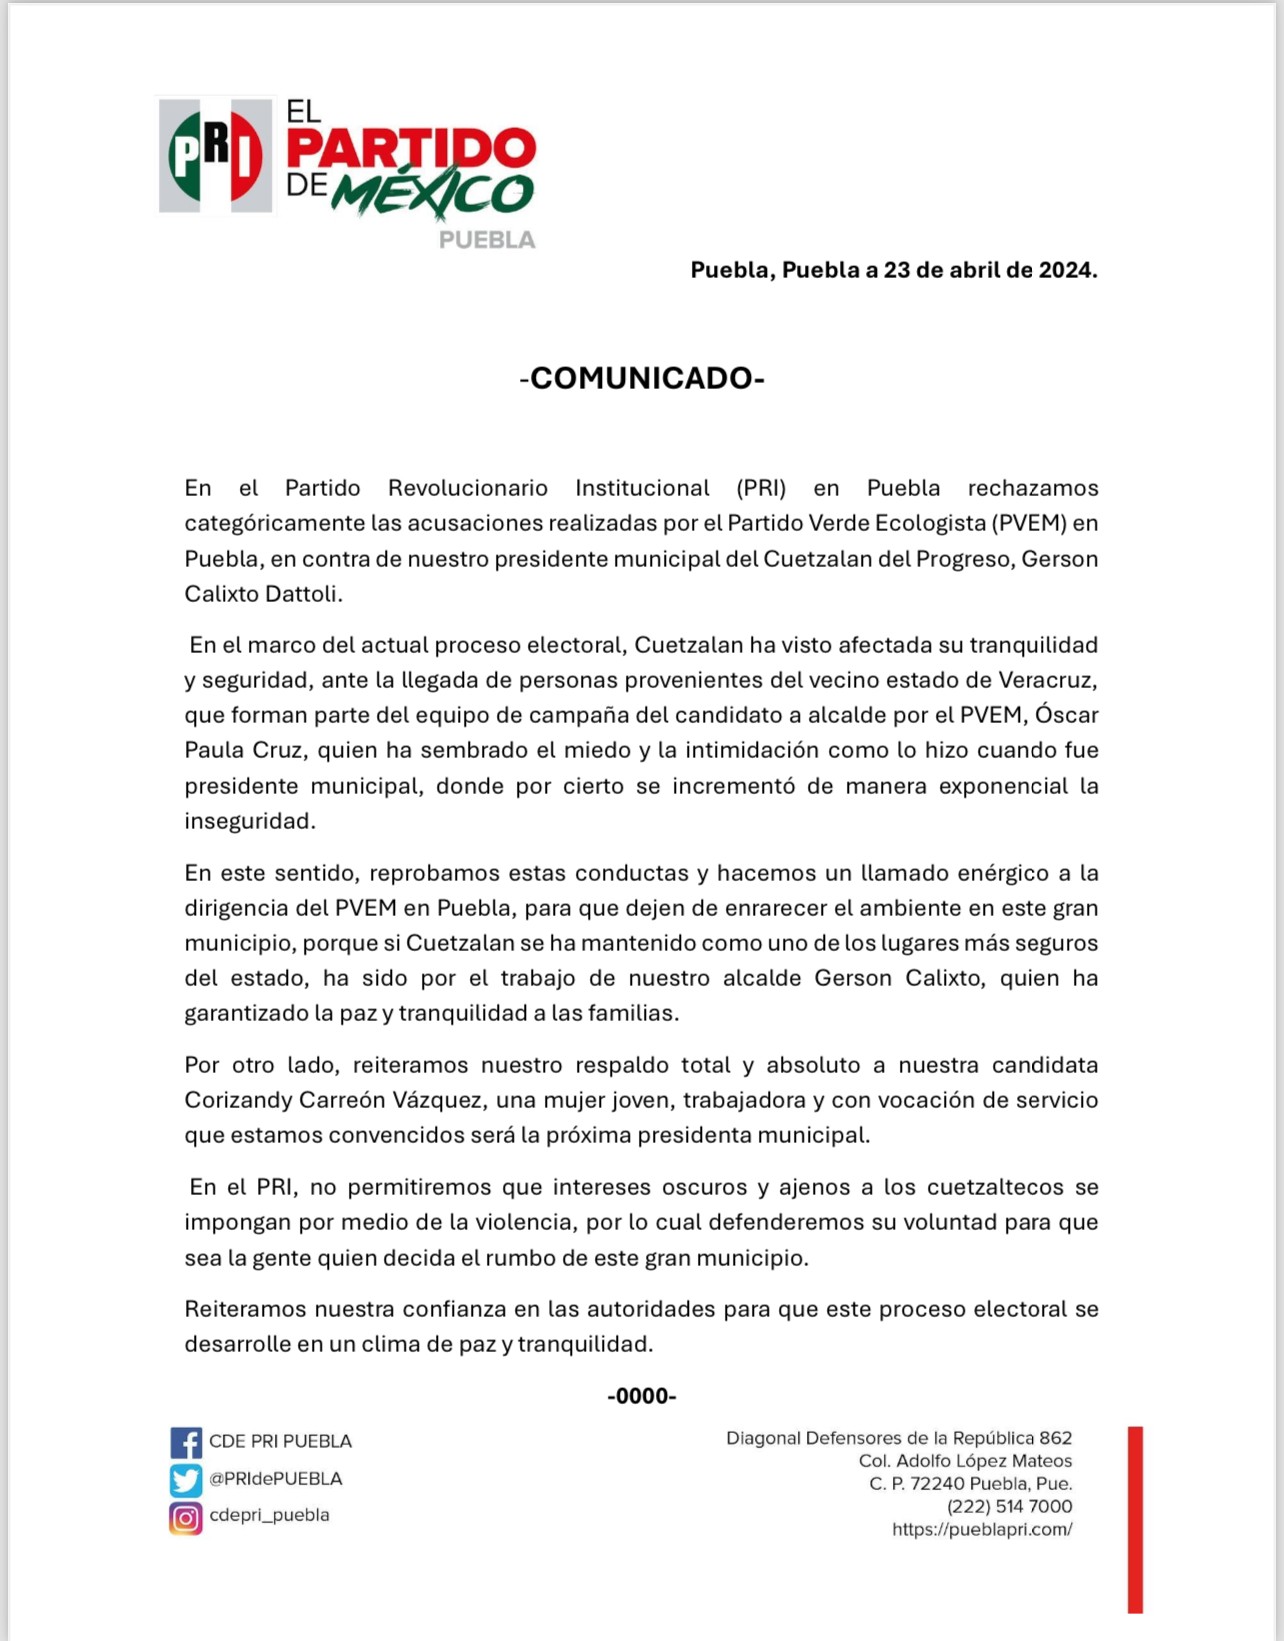 En el Partido Revolucionario Institucional (PRI) en Puebla rechazamos categóricamente las acusaciones realizadas por el Partido Verde Ecologista (PVEM) en Puebla